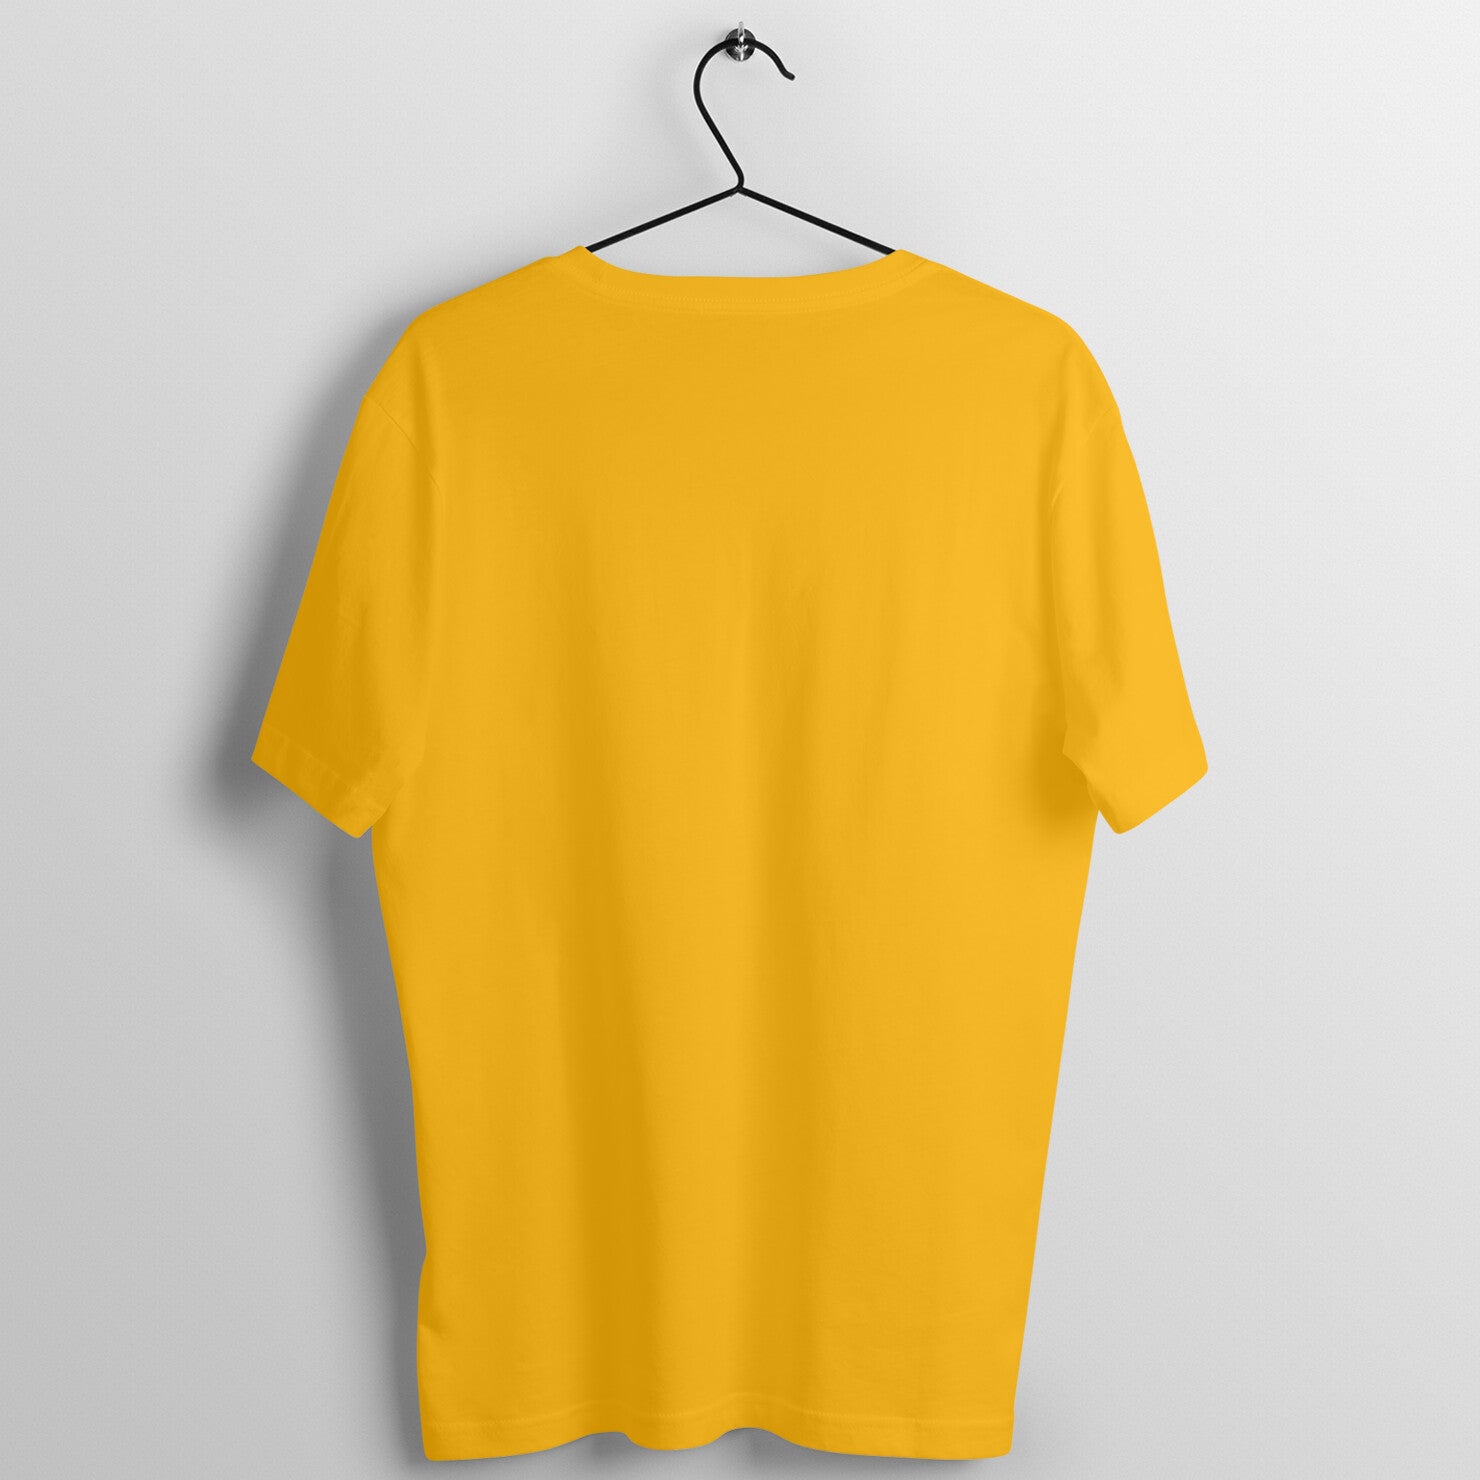 Men's Golden Yellow T-shirt